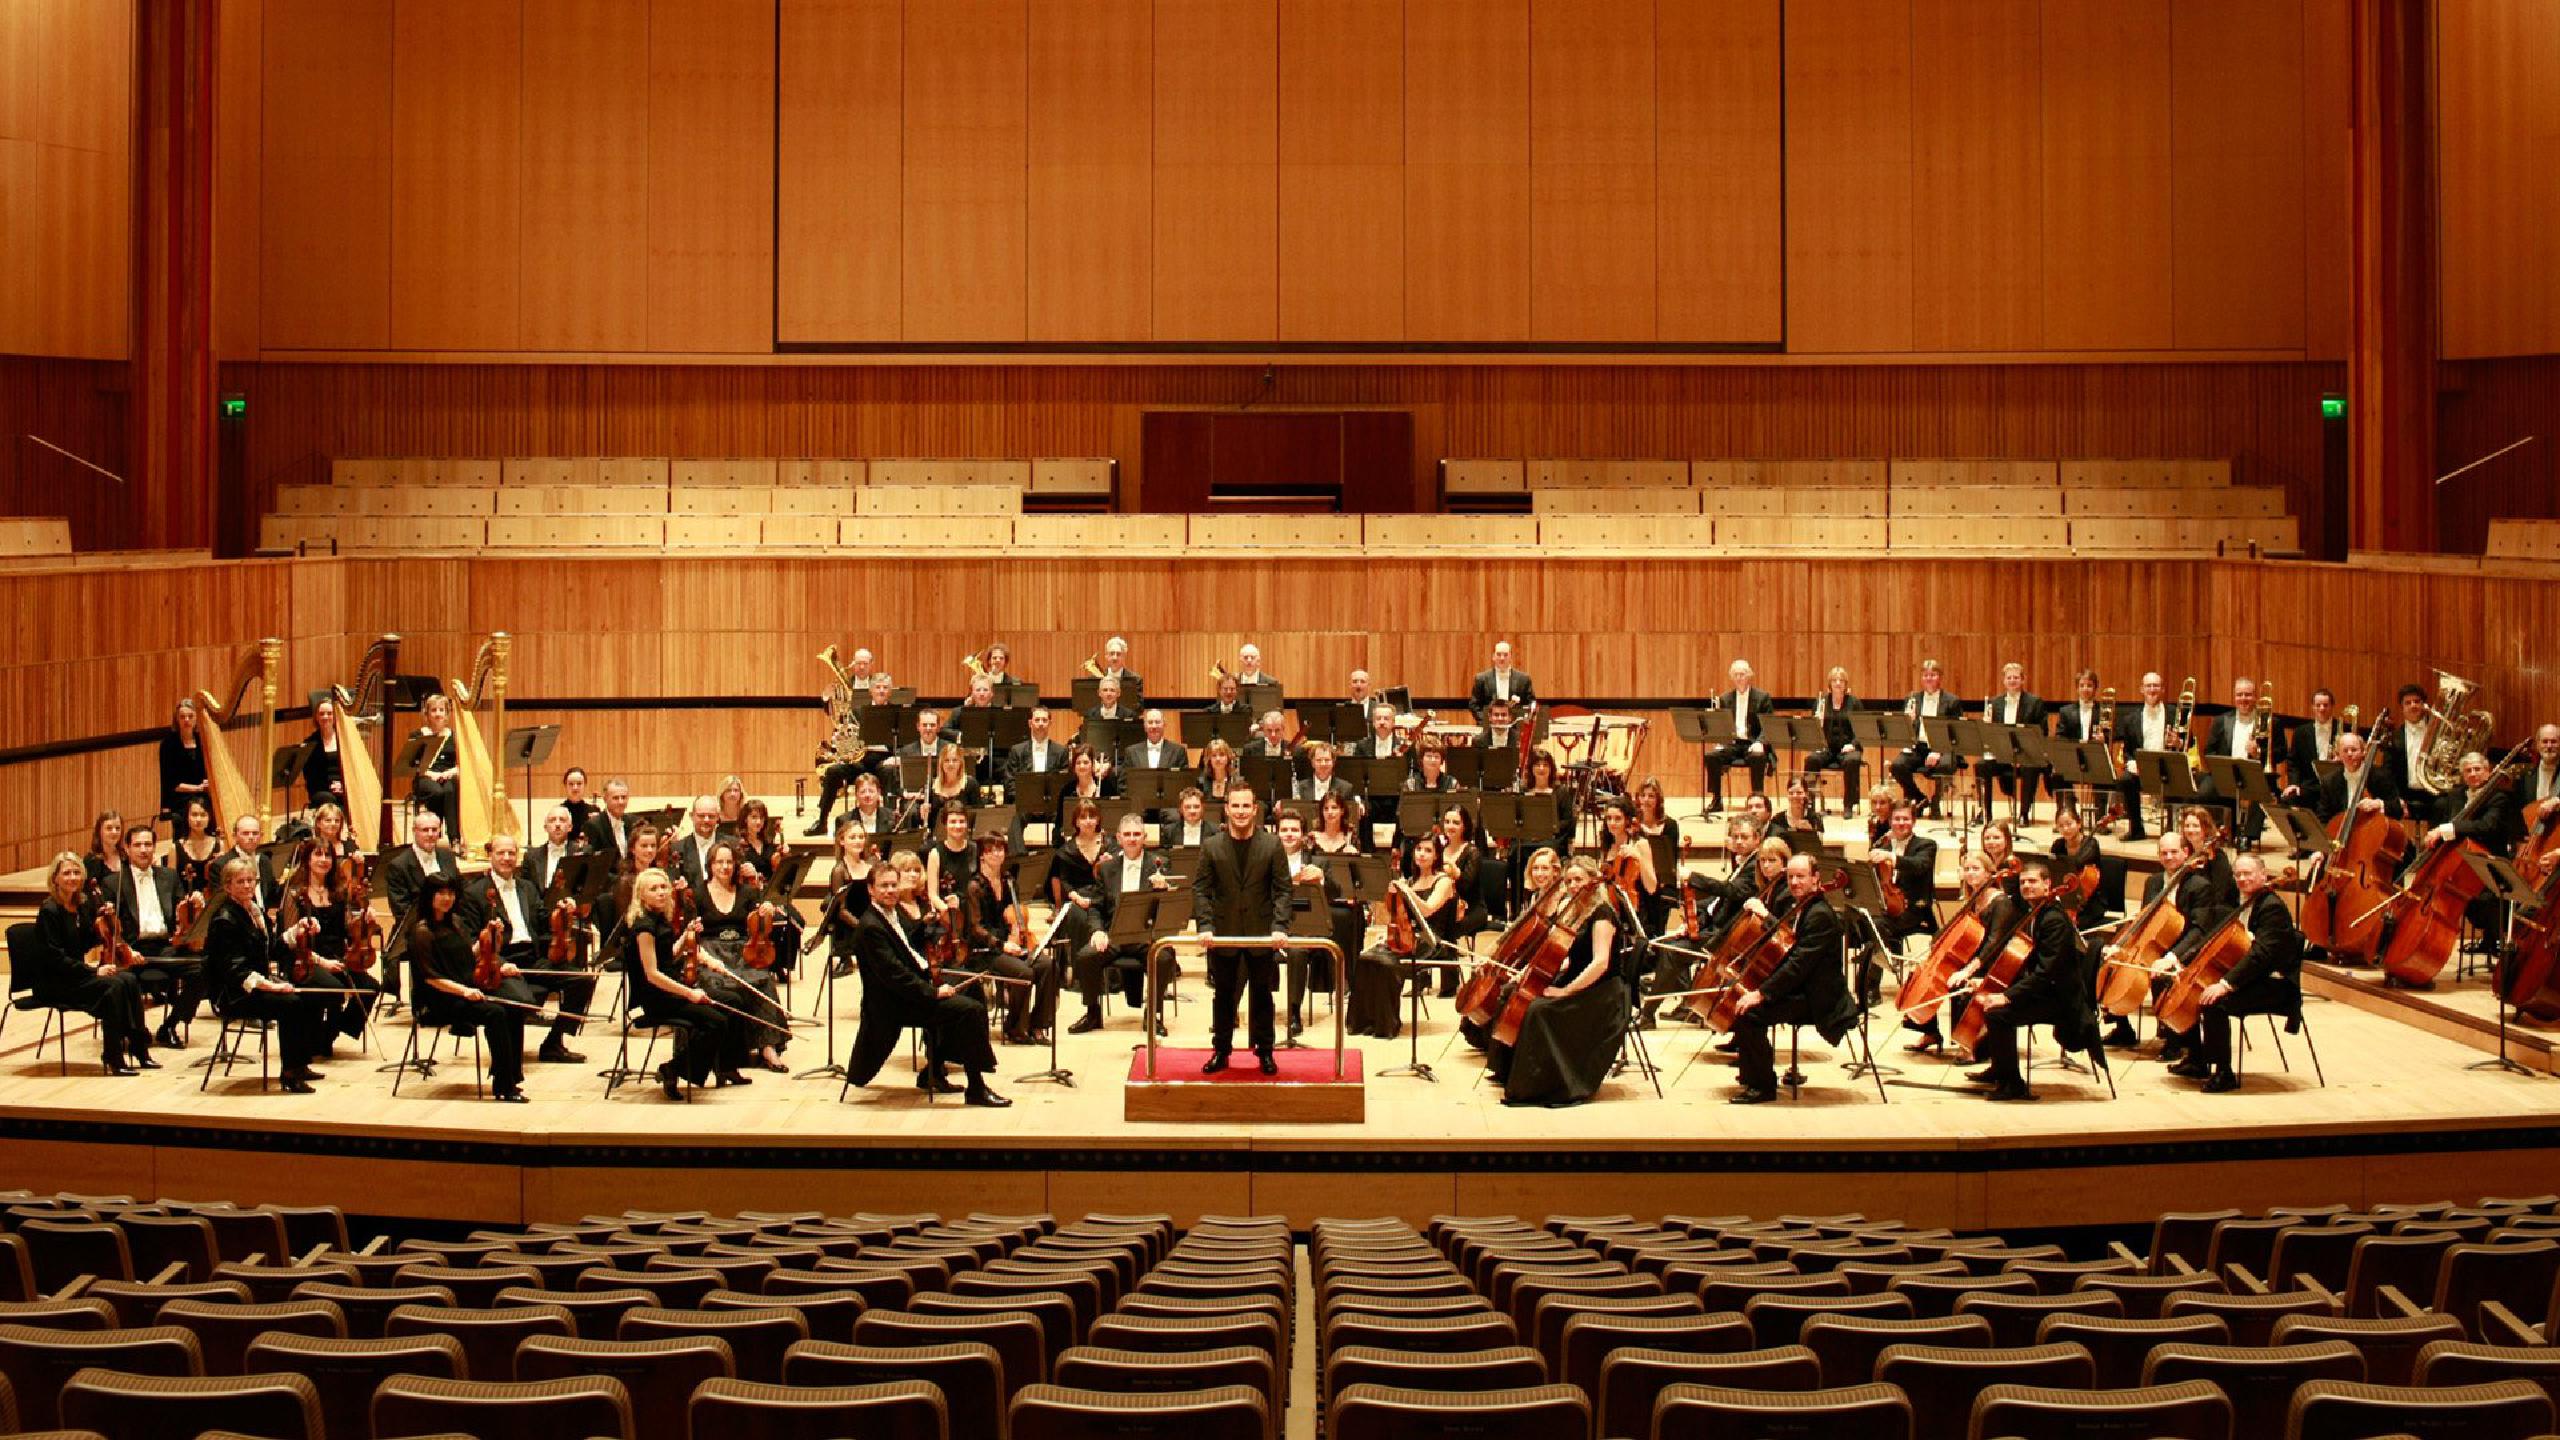 London Philharmonic Orchestra tour dates 2022 2023. London Philharmonic